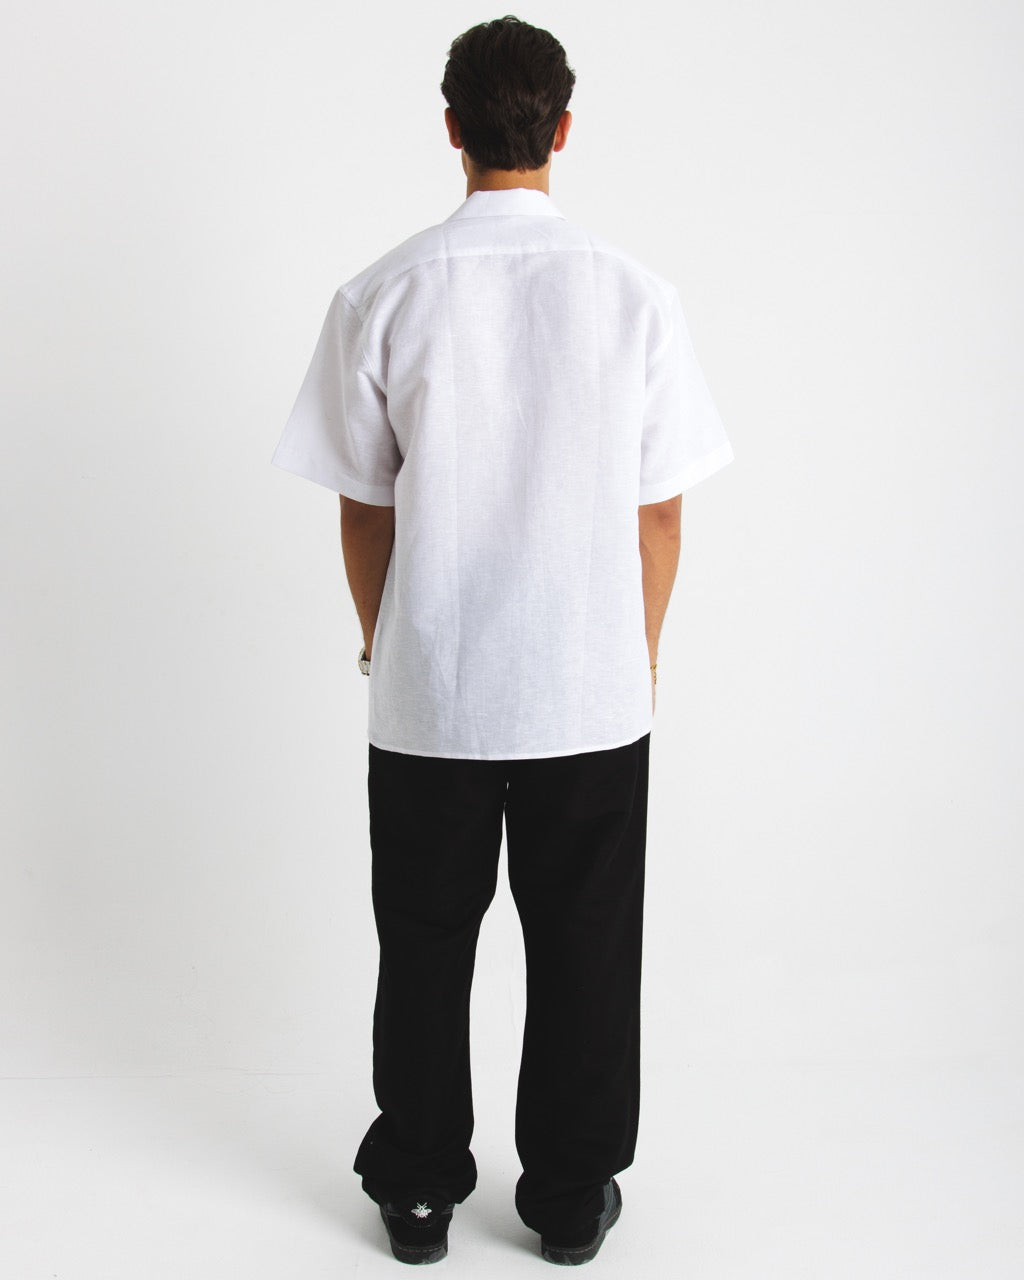 402 White Short Sleeve Shirts